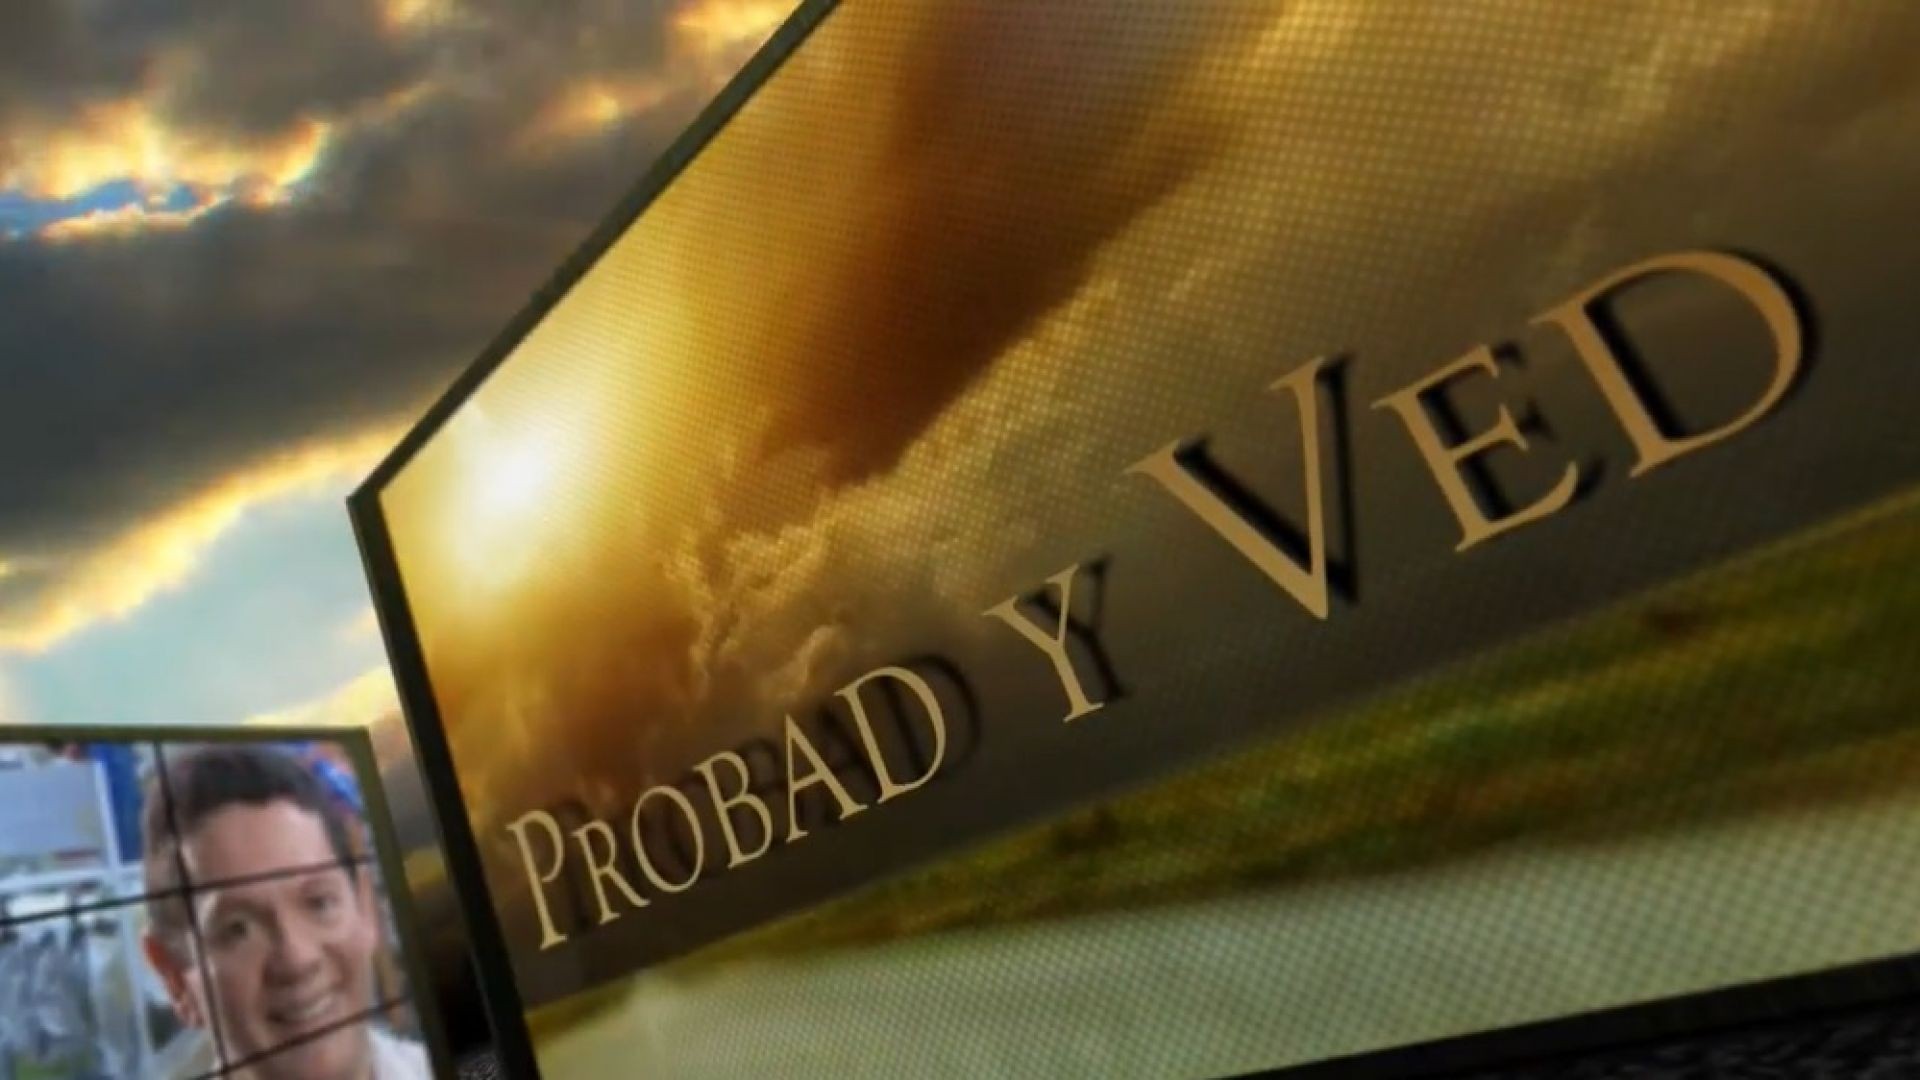 Probad y Ved 2013 - El poder de la oración - 21/Dic